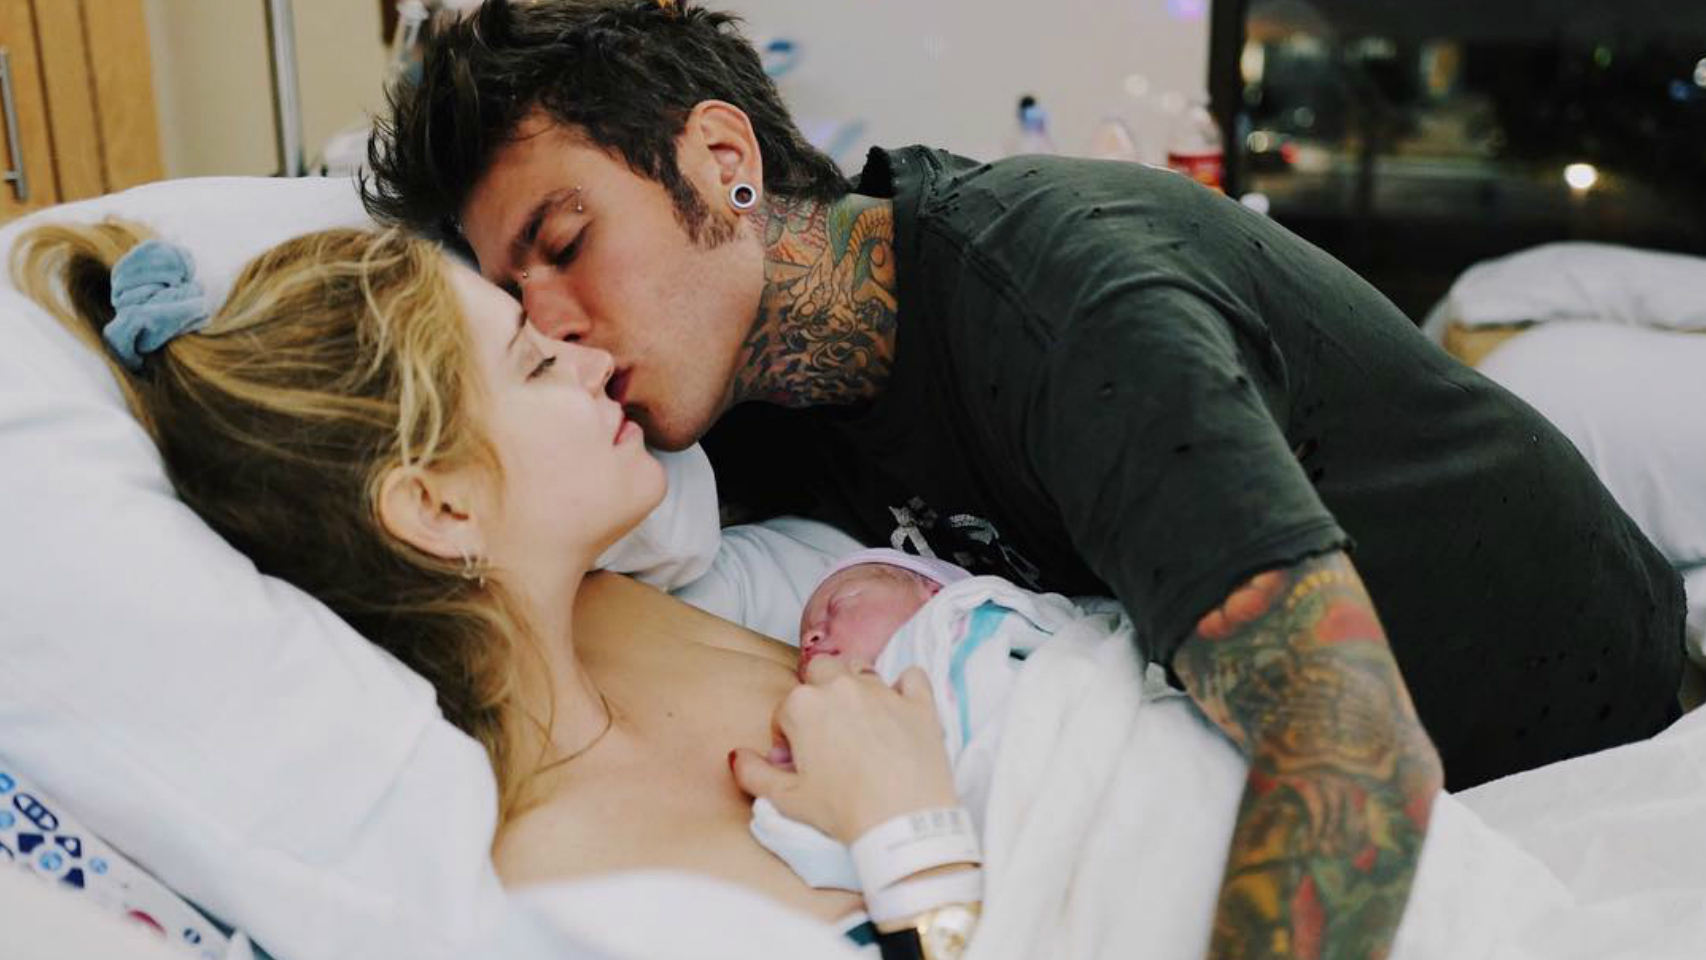 Chiara Ferragni ha querido compartir con todos sus seguidores de Instagram la primera foto junto a su bebé. La bloguera ha presentado con una emotiva foto junto a su pareja, Fedez, a su hijo recién nacido.